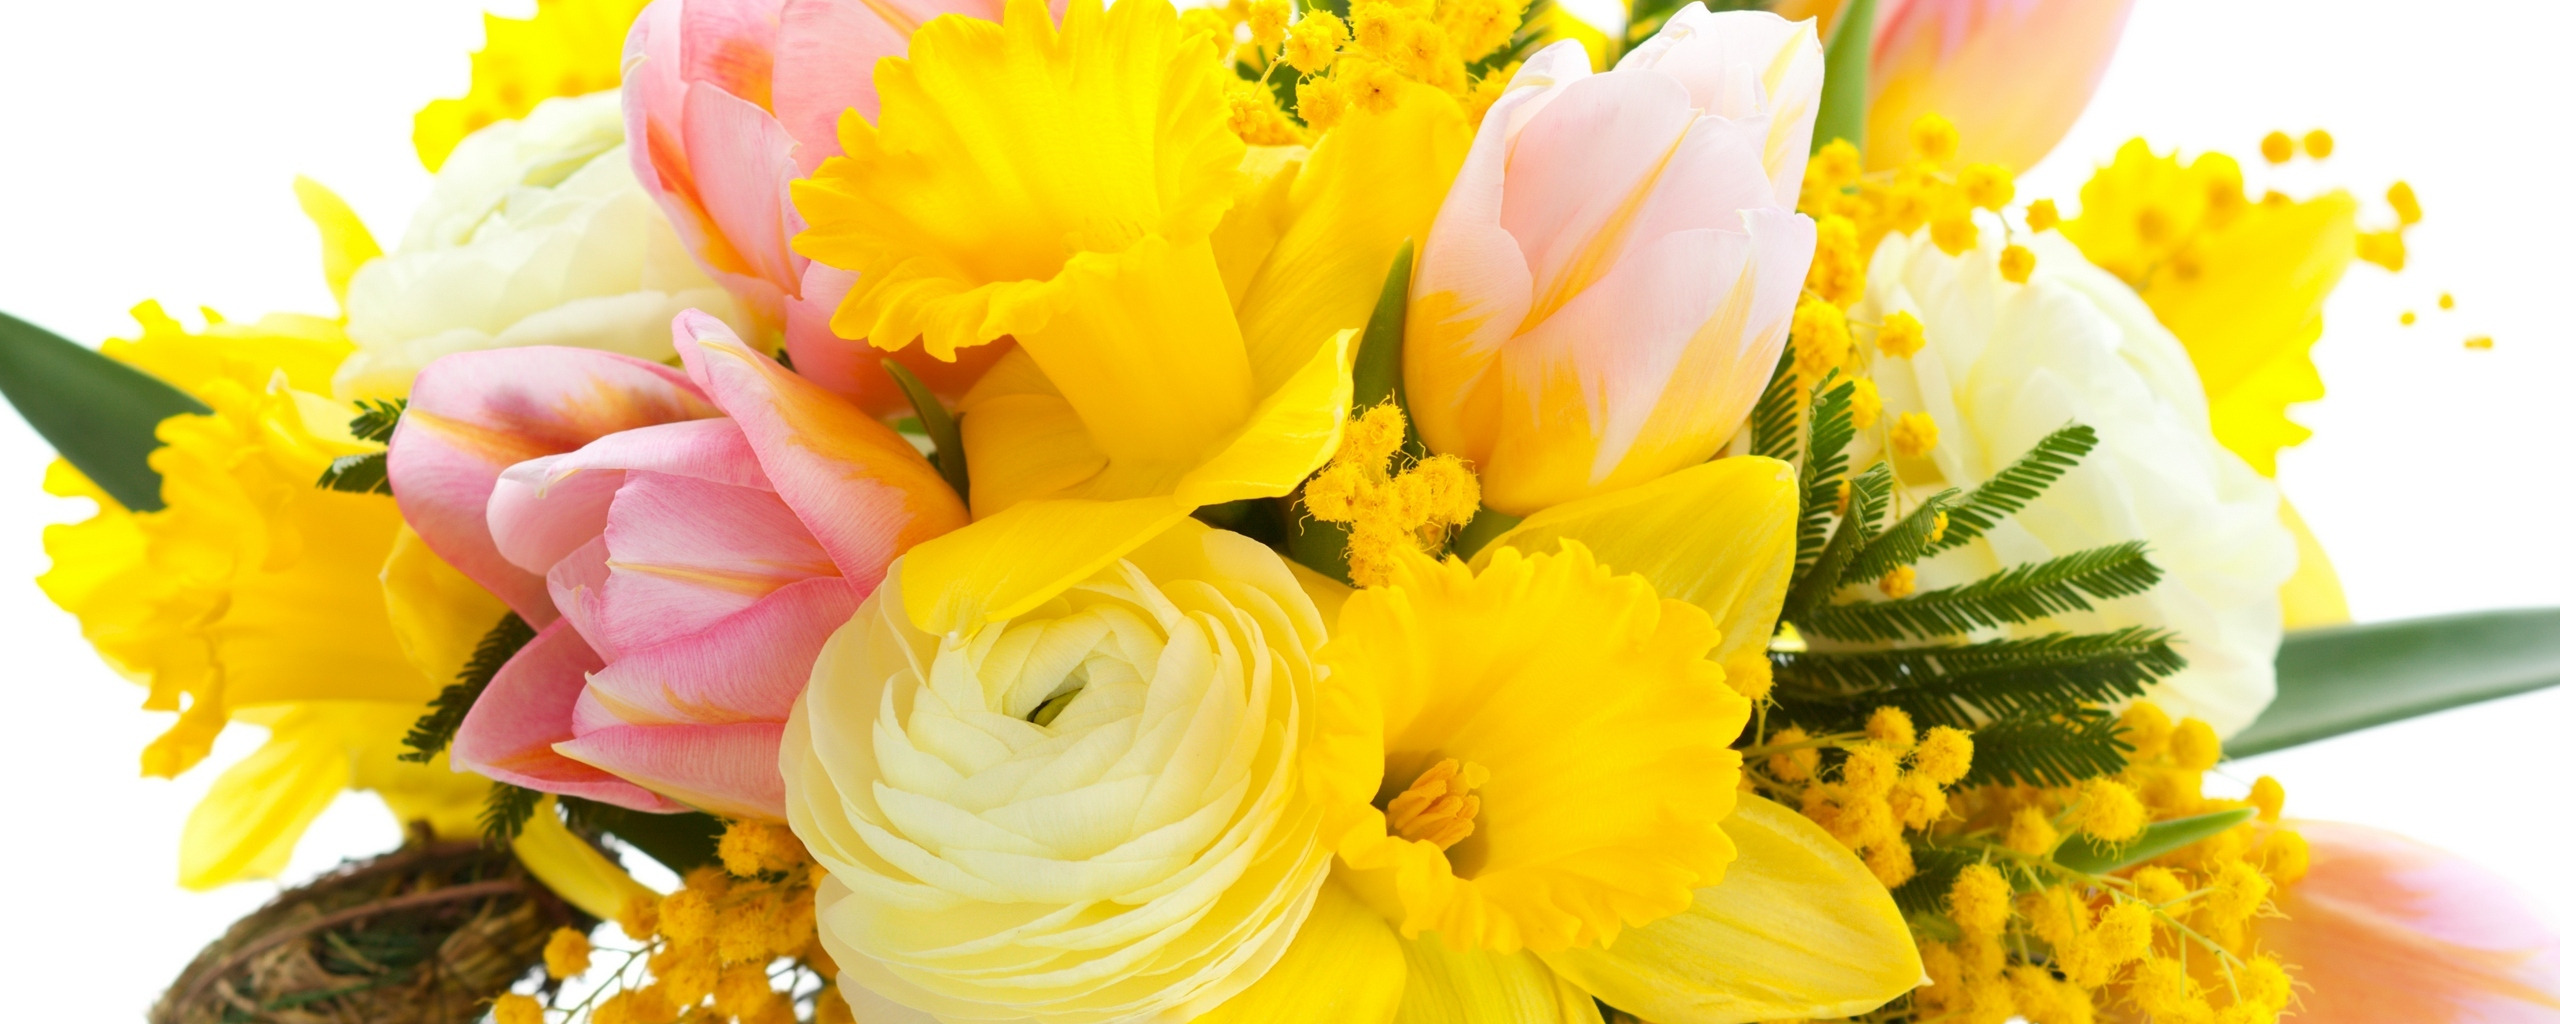 Почему дарить желтые цветы не принято и как это влияет на отношения